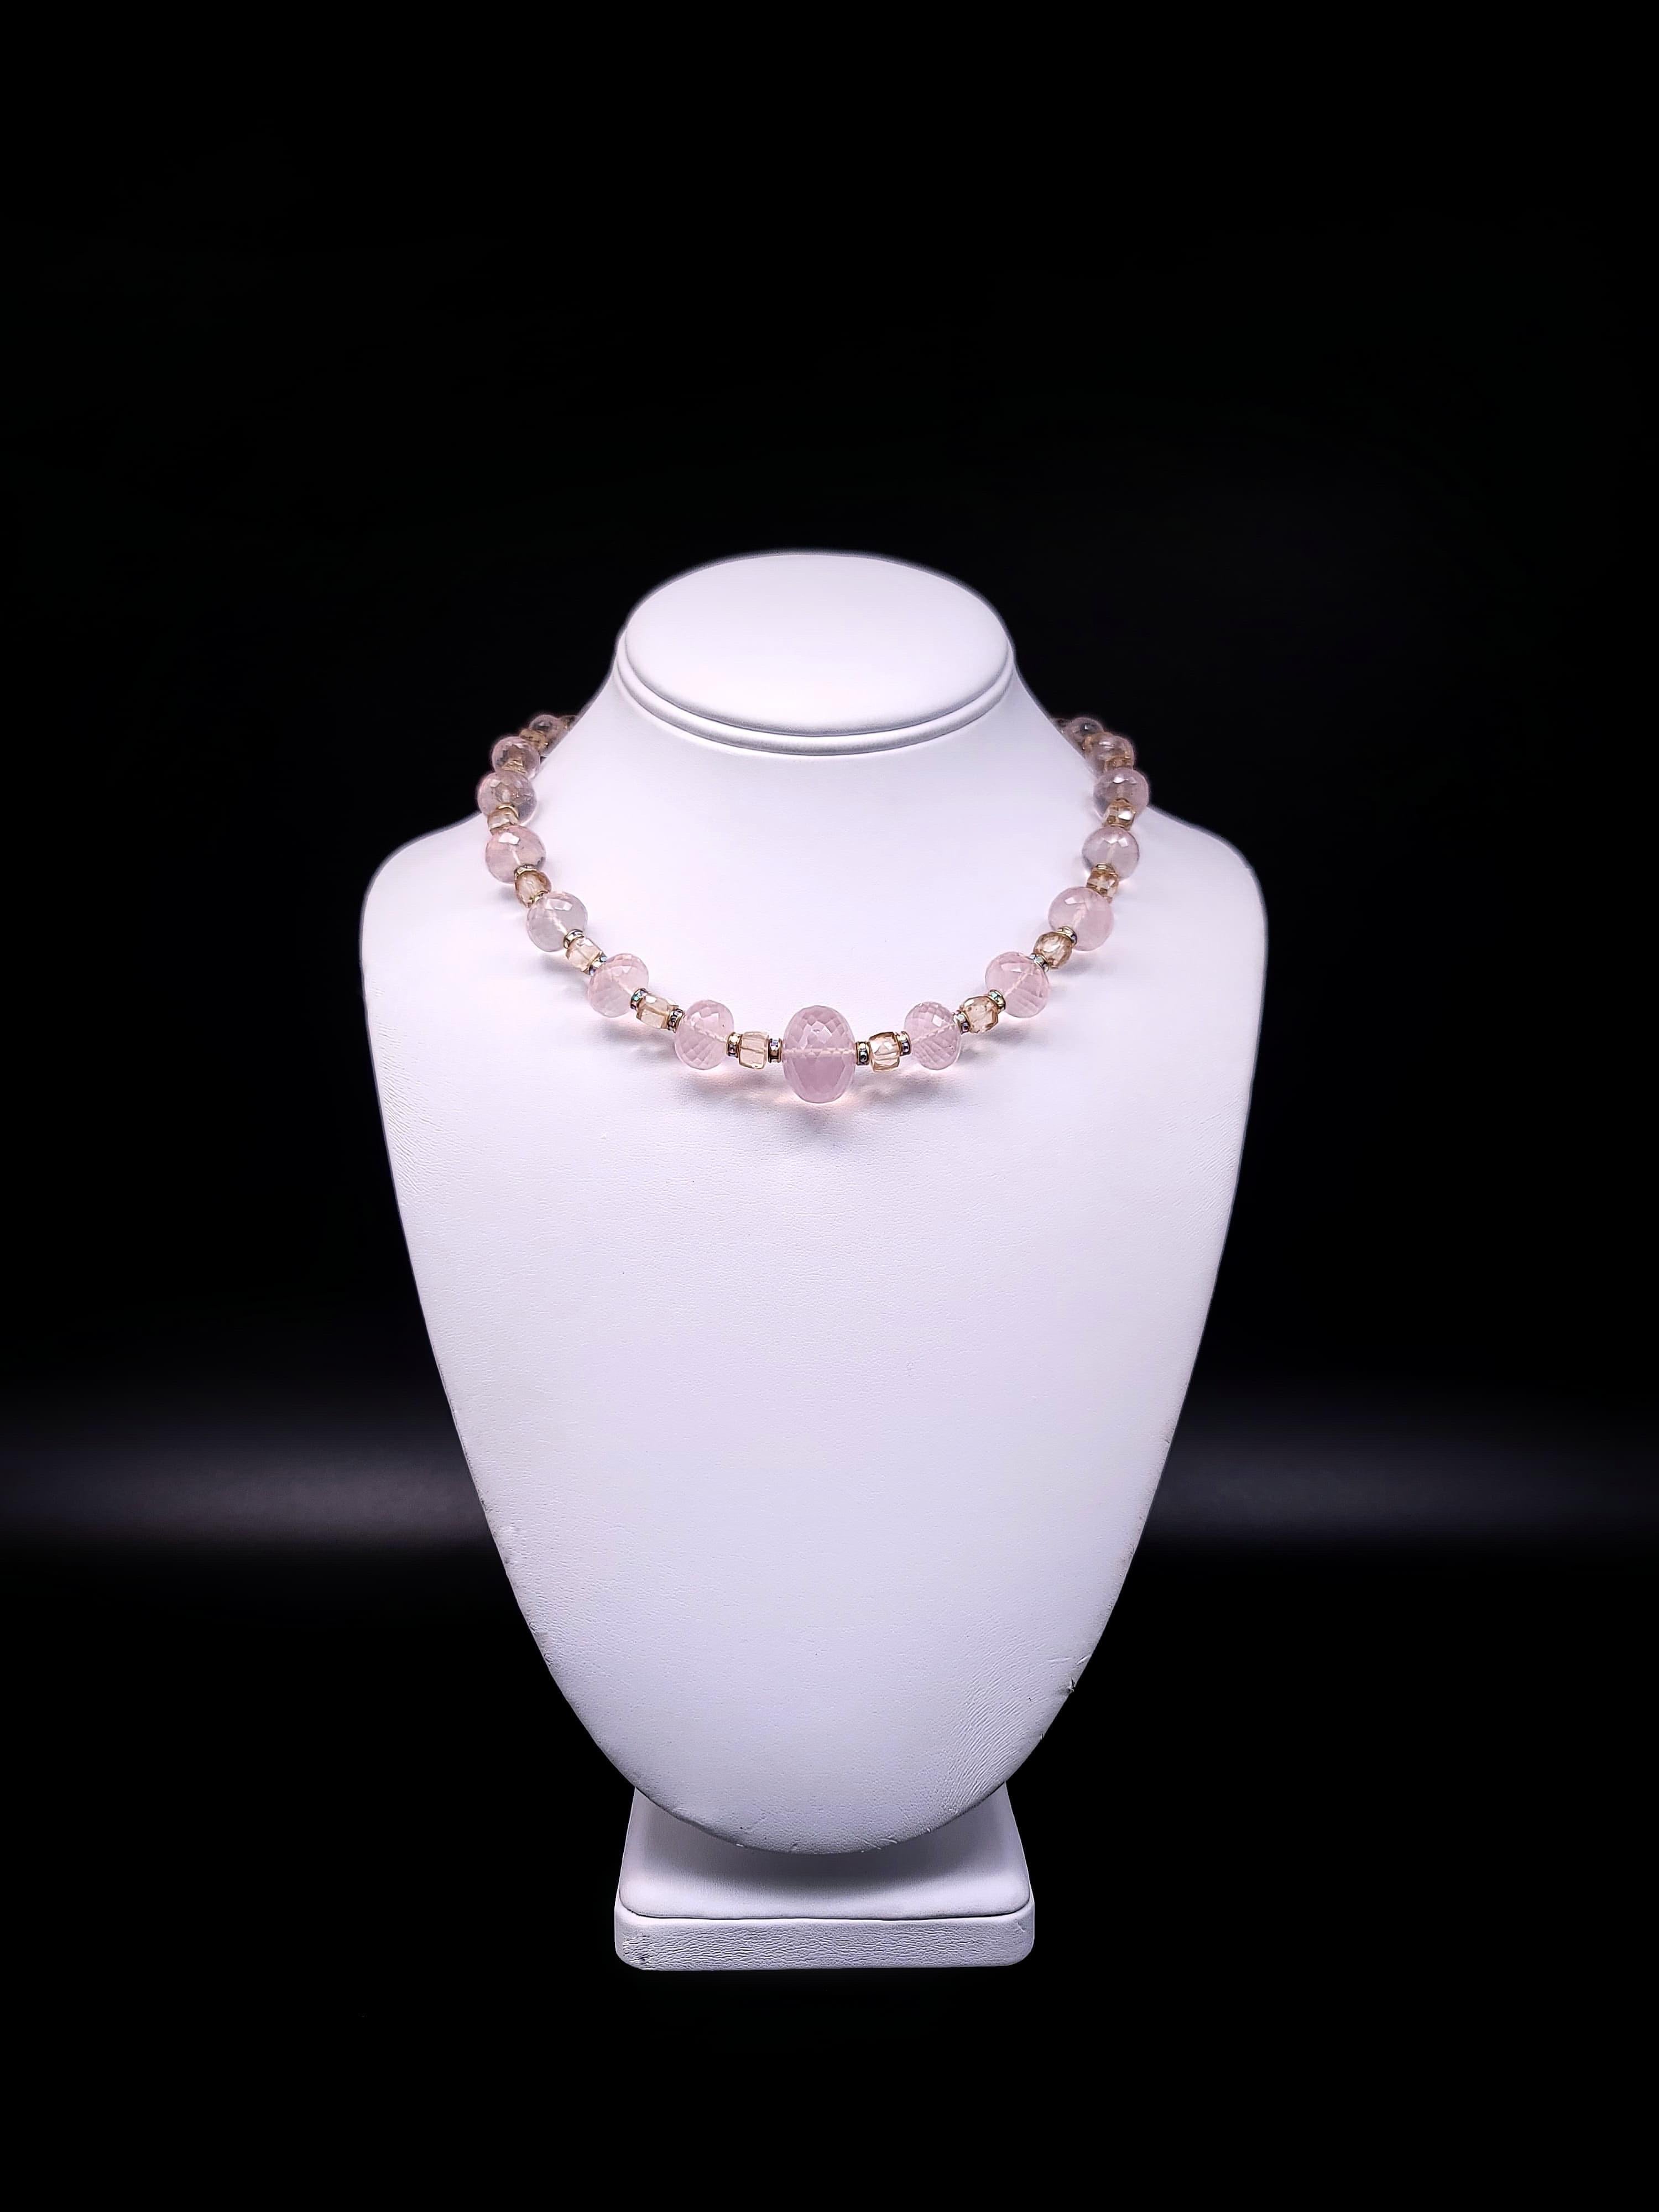 A.Jeschel Romantic Rose Quartz single strand necklace. 9